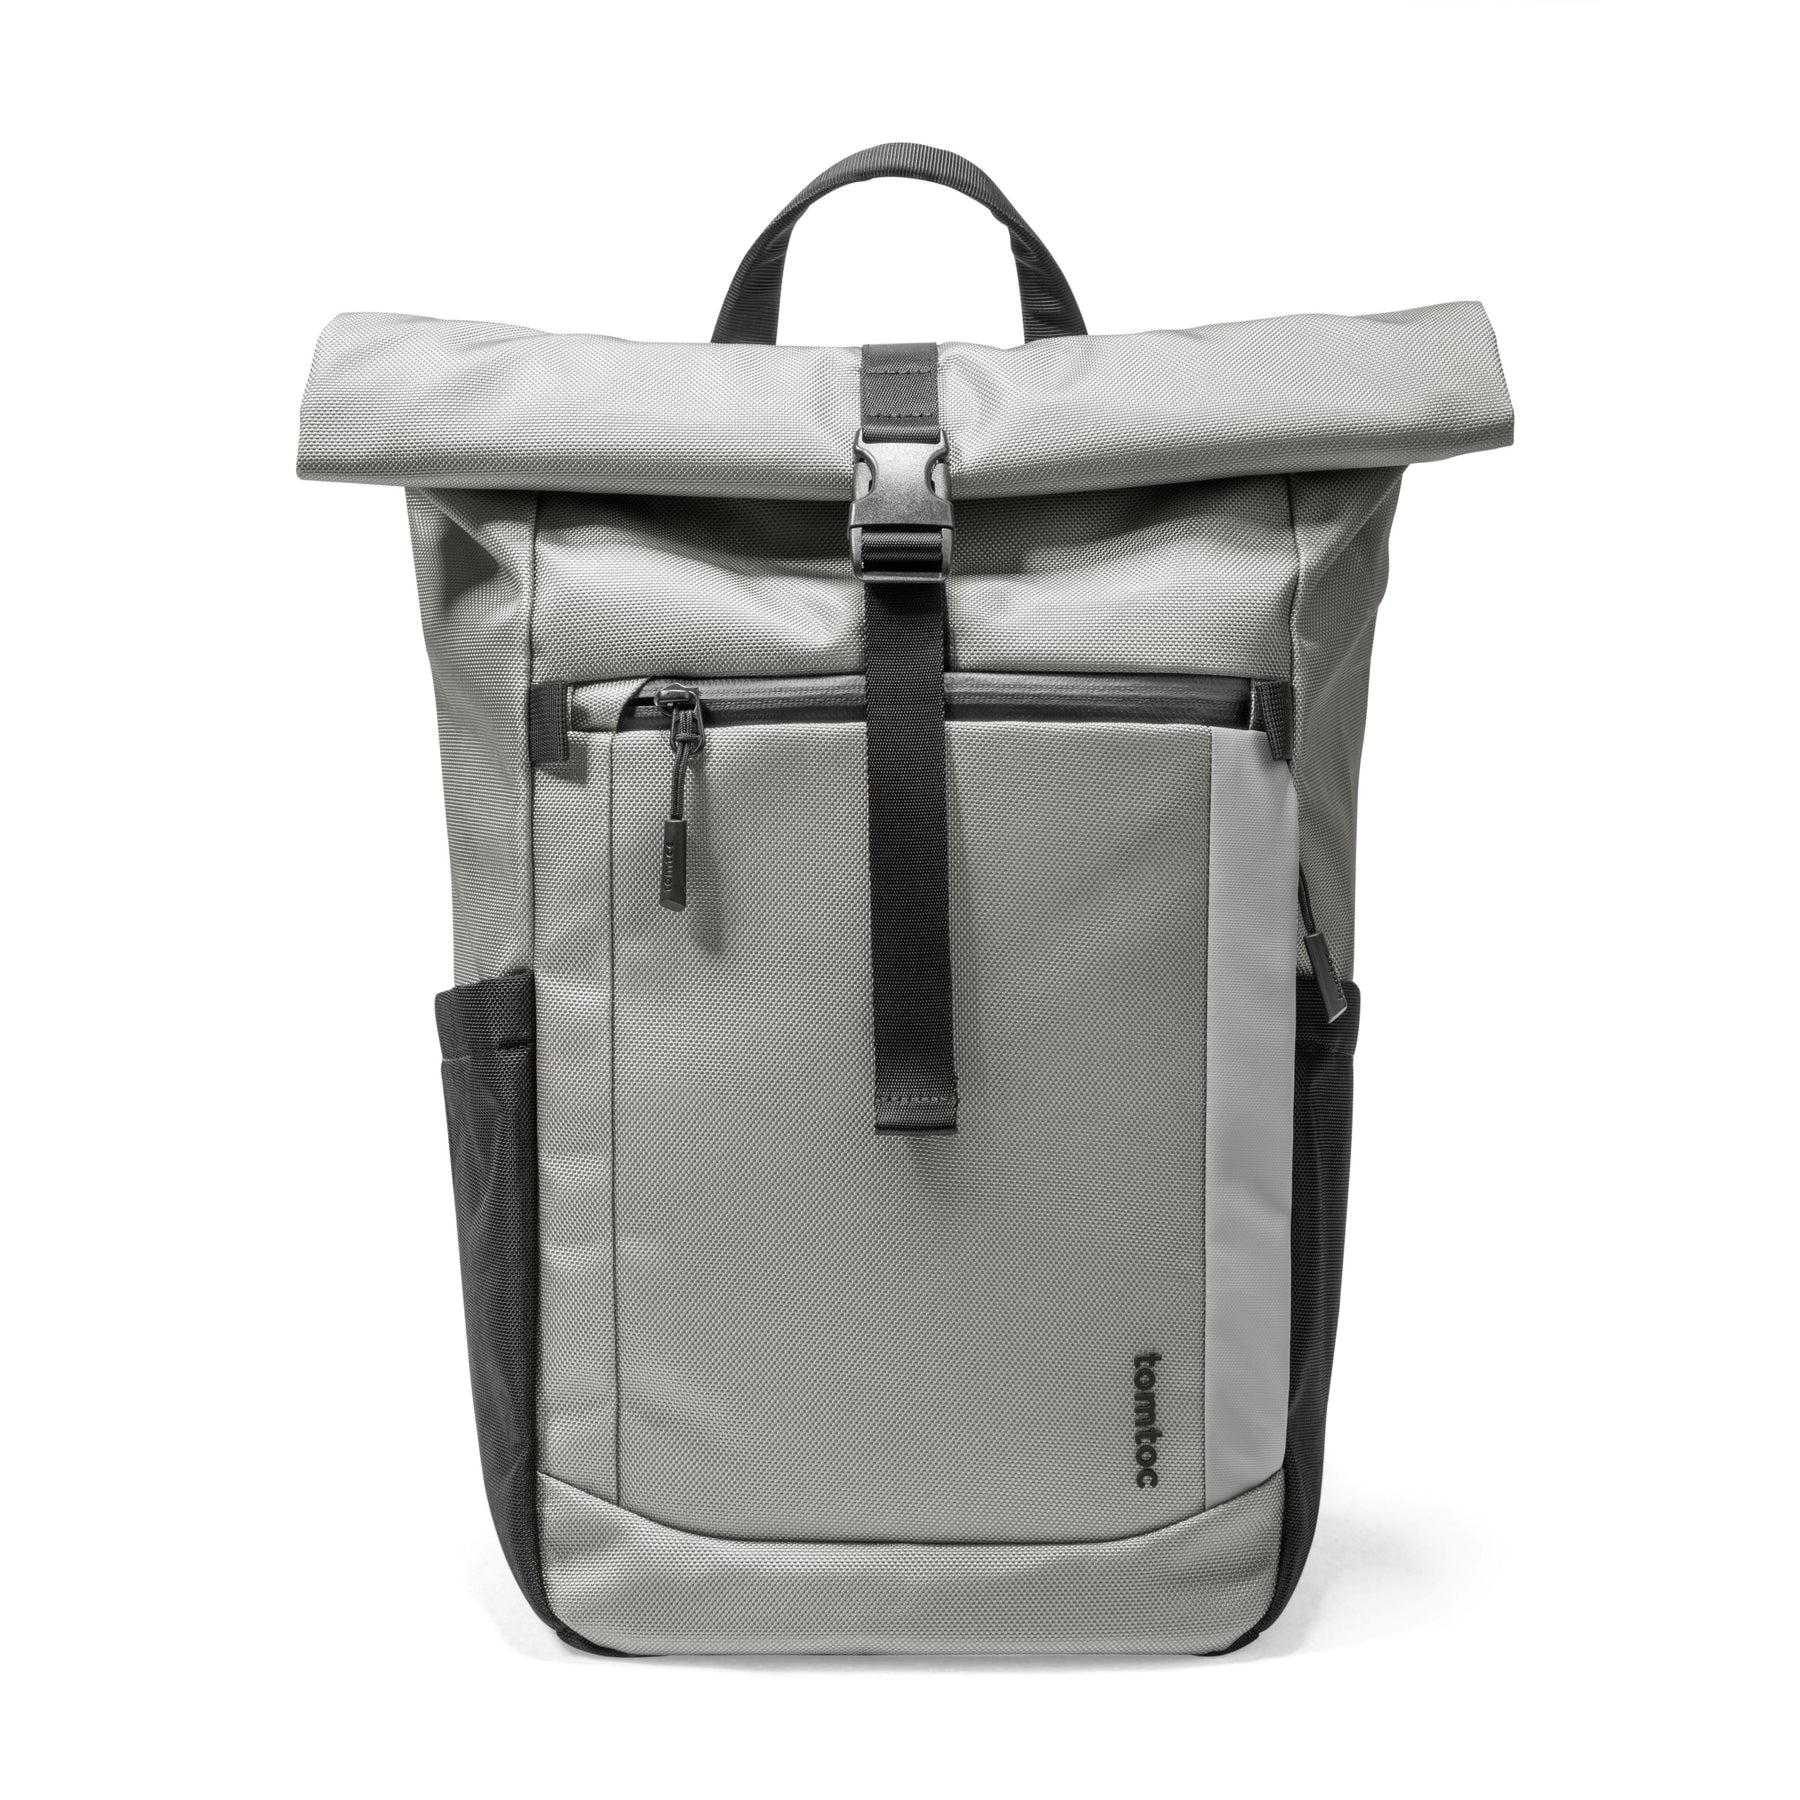 Navigator-T61 22L Travel Laptop Backpack 15.6-inch